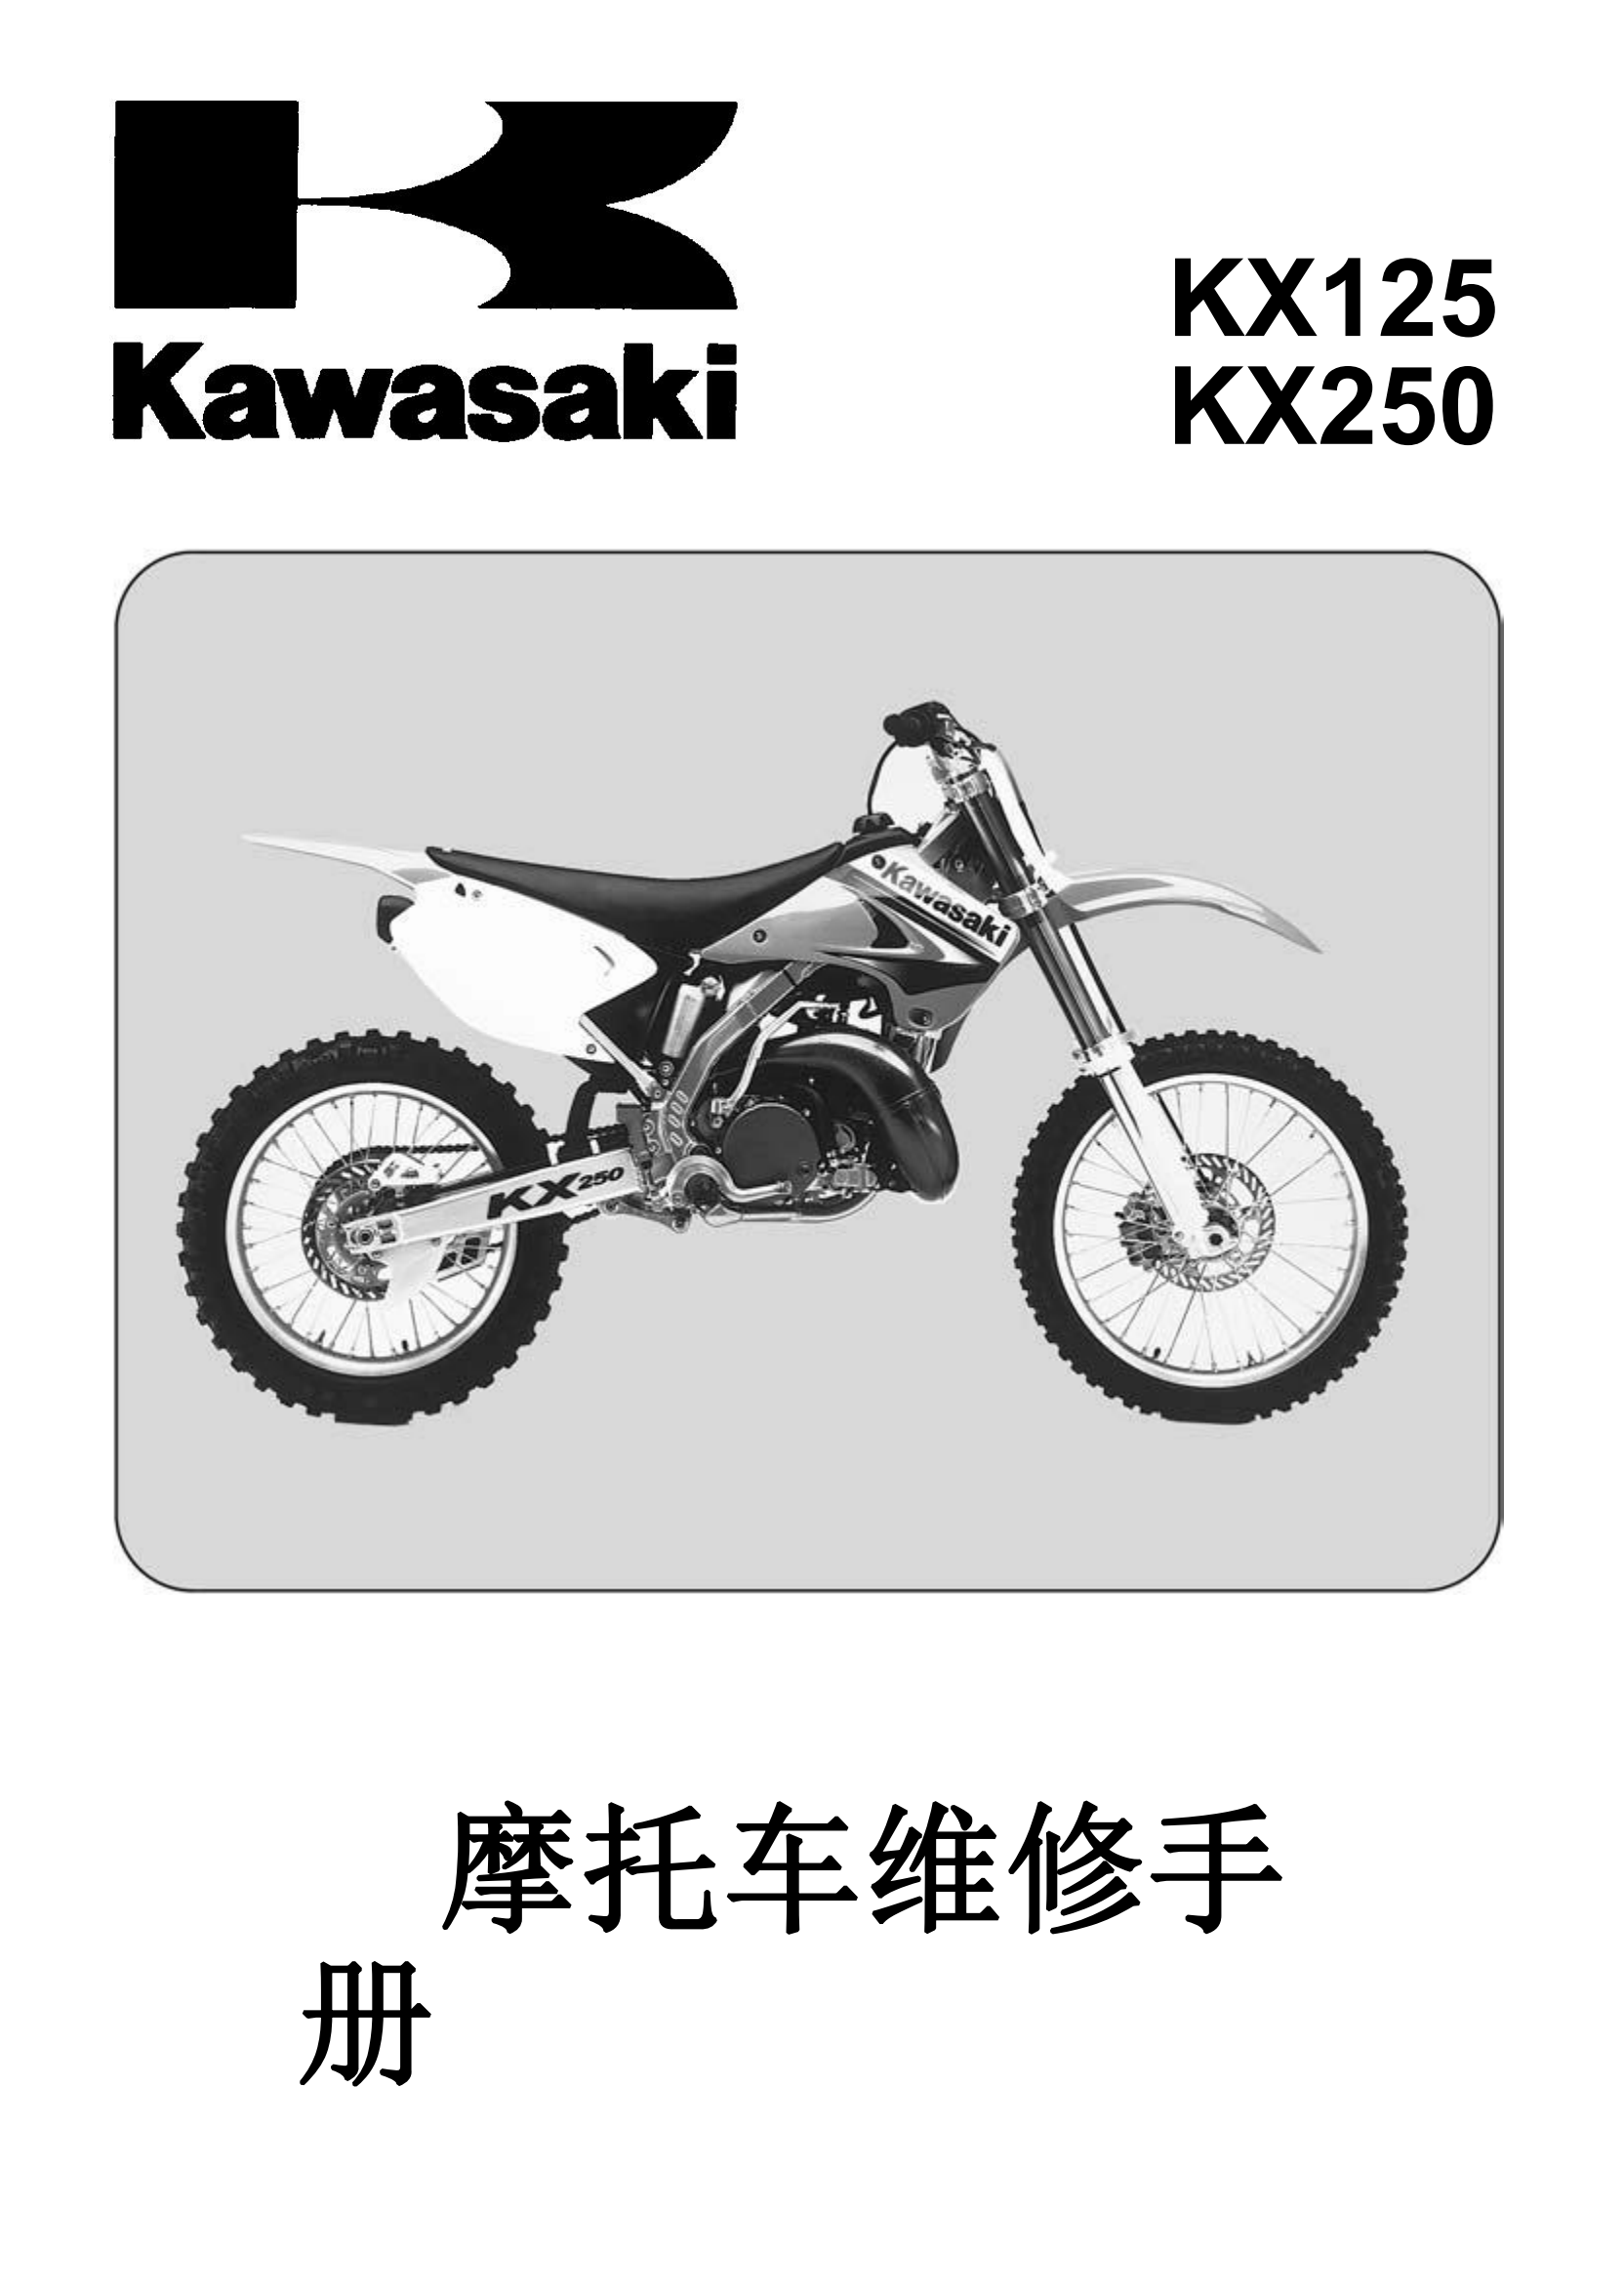 简体中文2003-2004年川崎kx125 kx250维修手册kawasaki kx125 kx250 维修手册插图